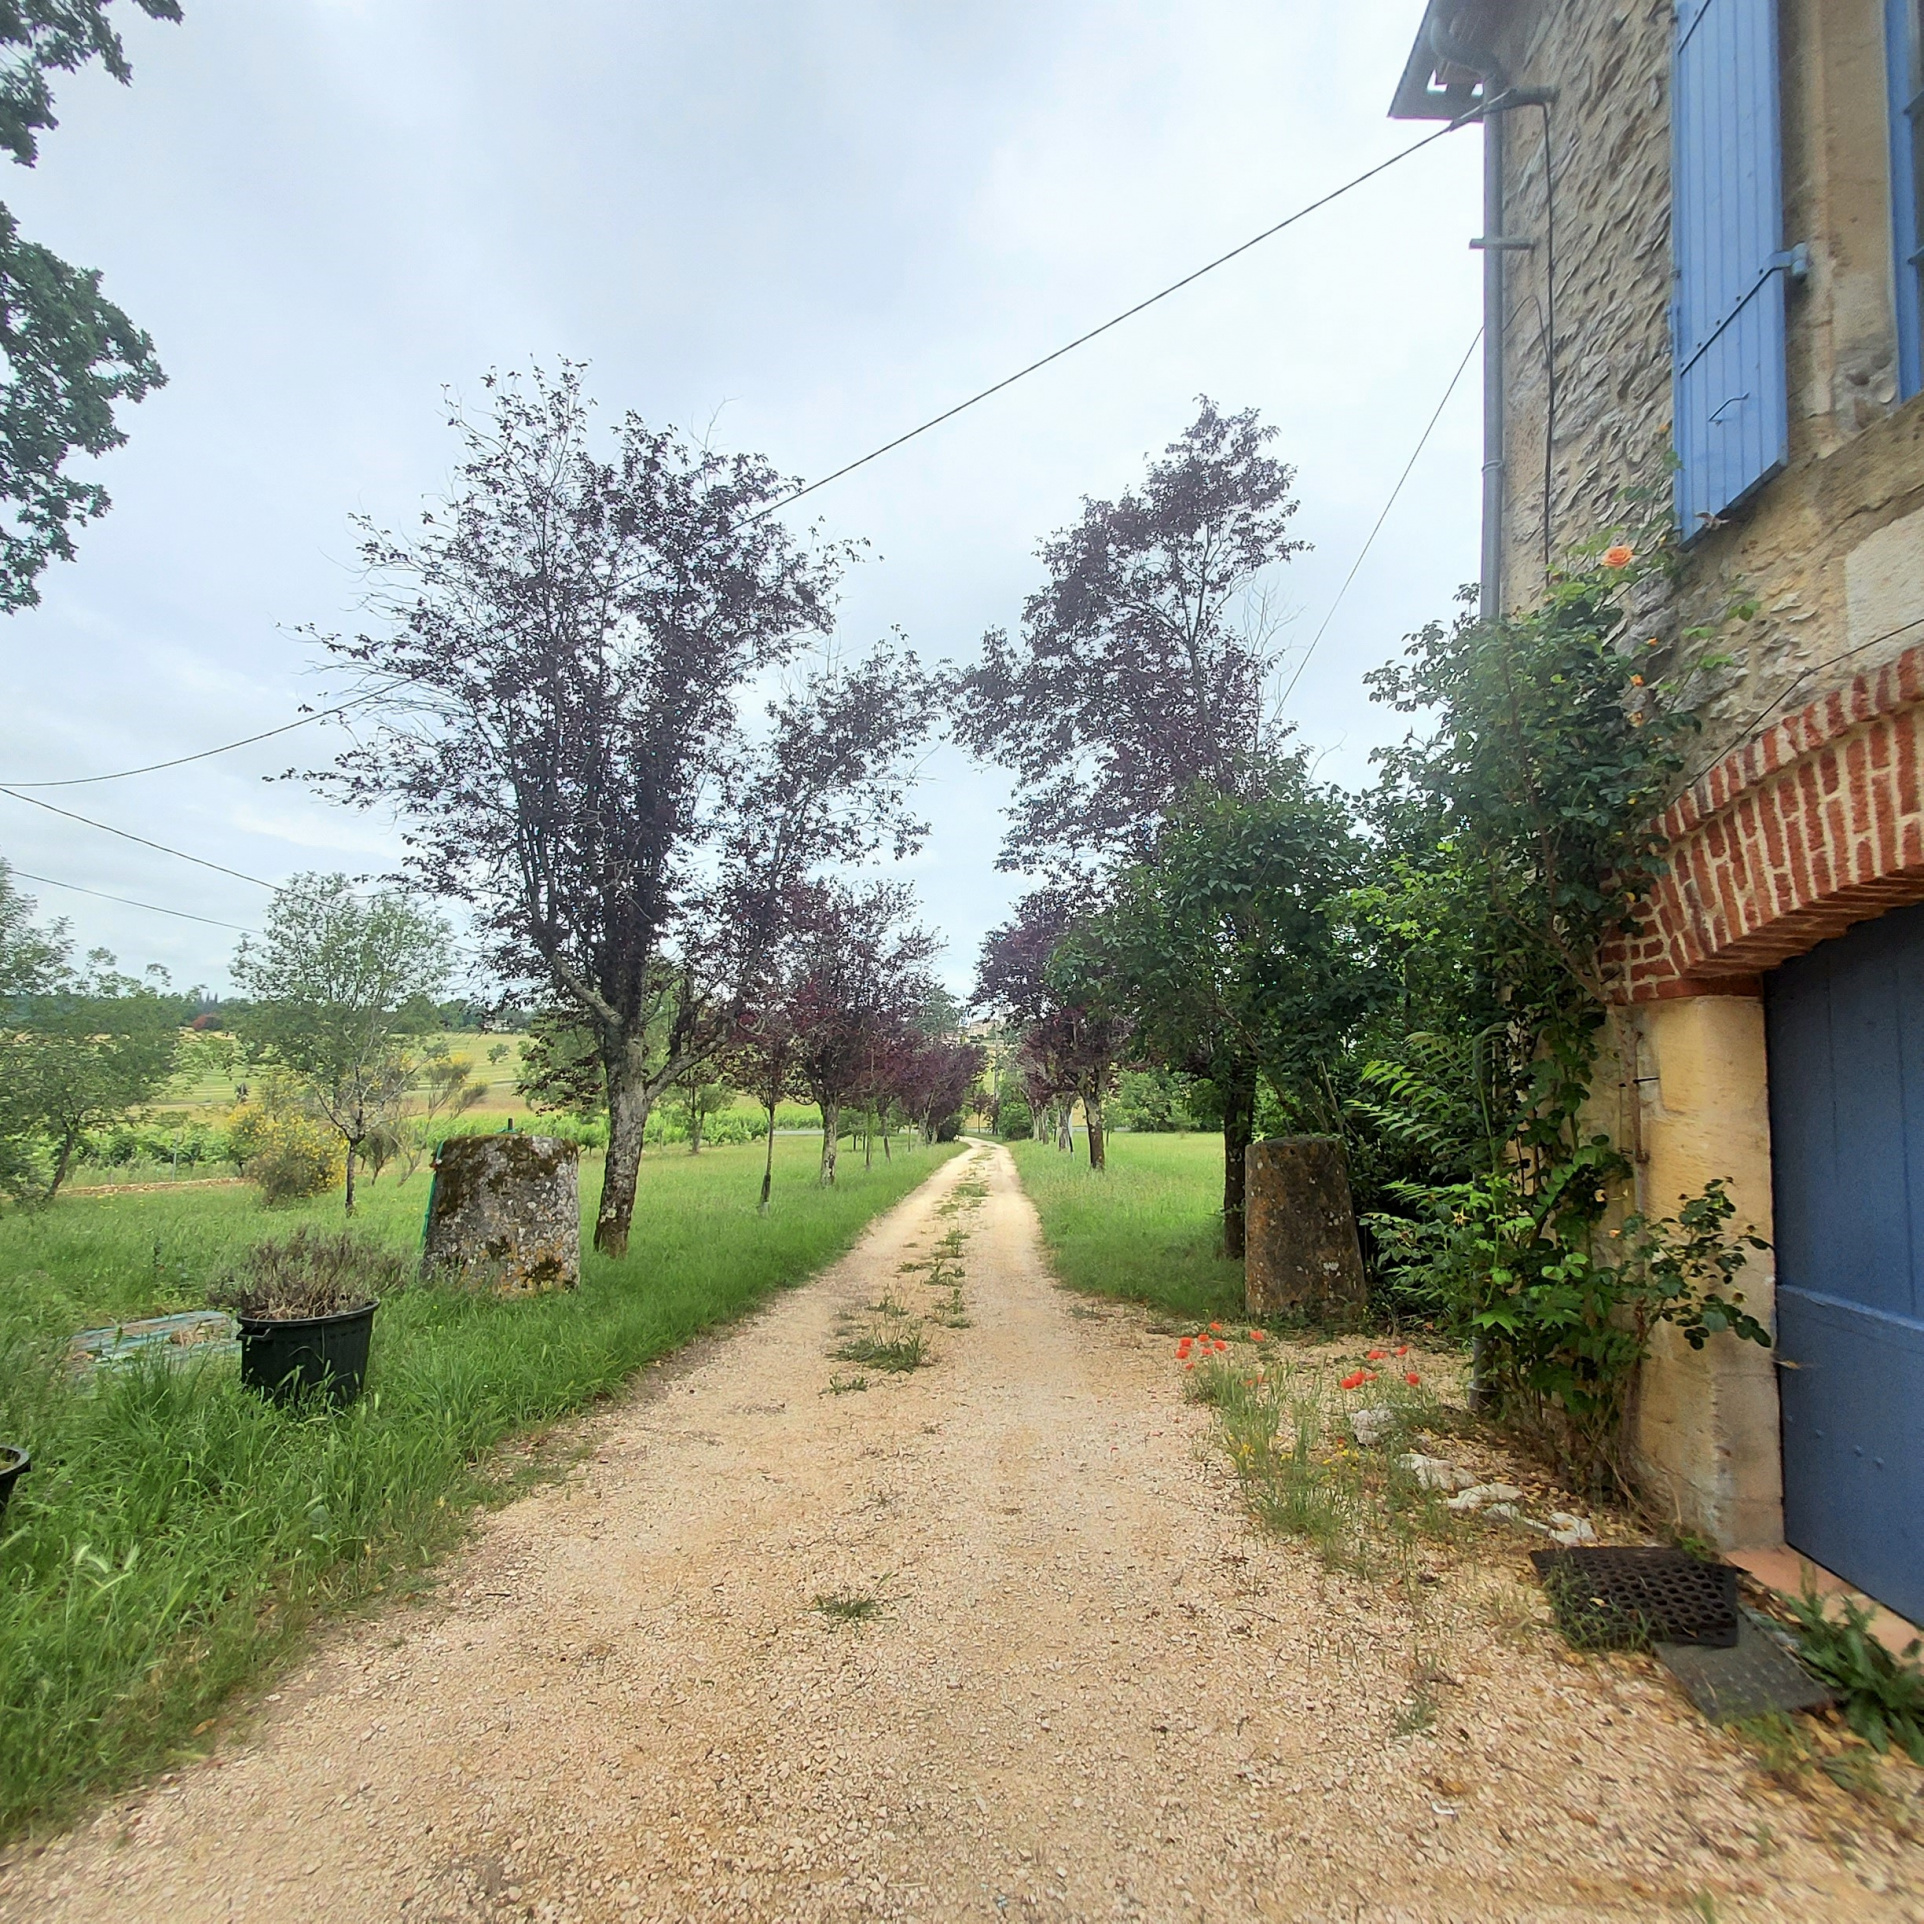 Belle maison de campagne à proximité d'un petit village dynamique du Lot et Garonne